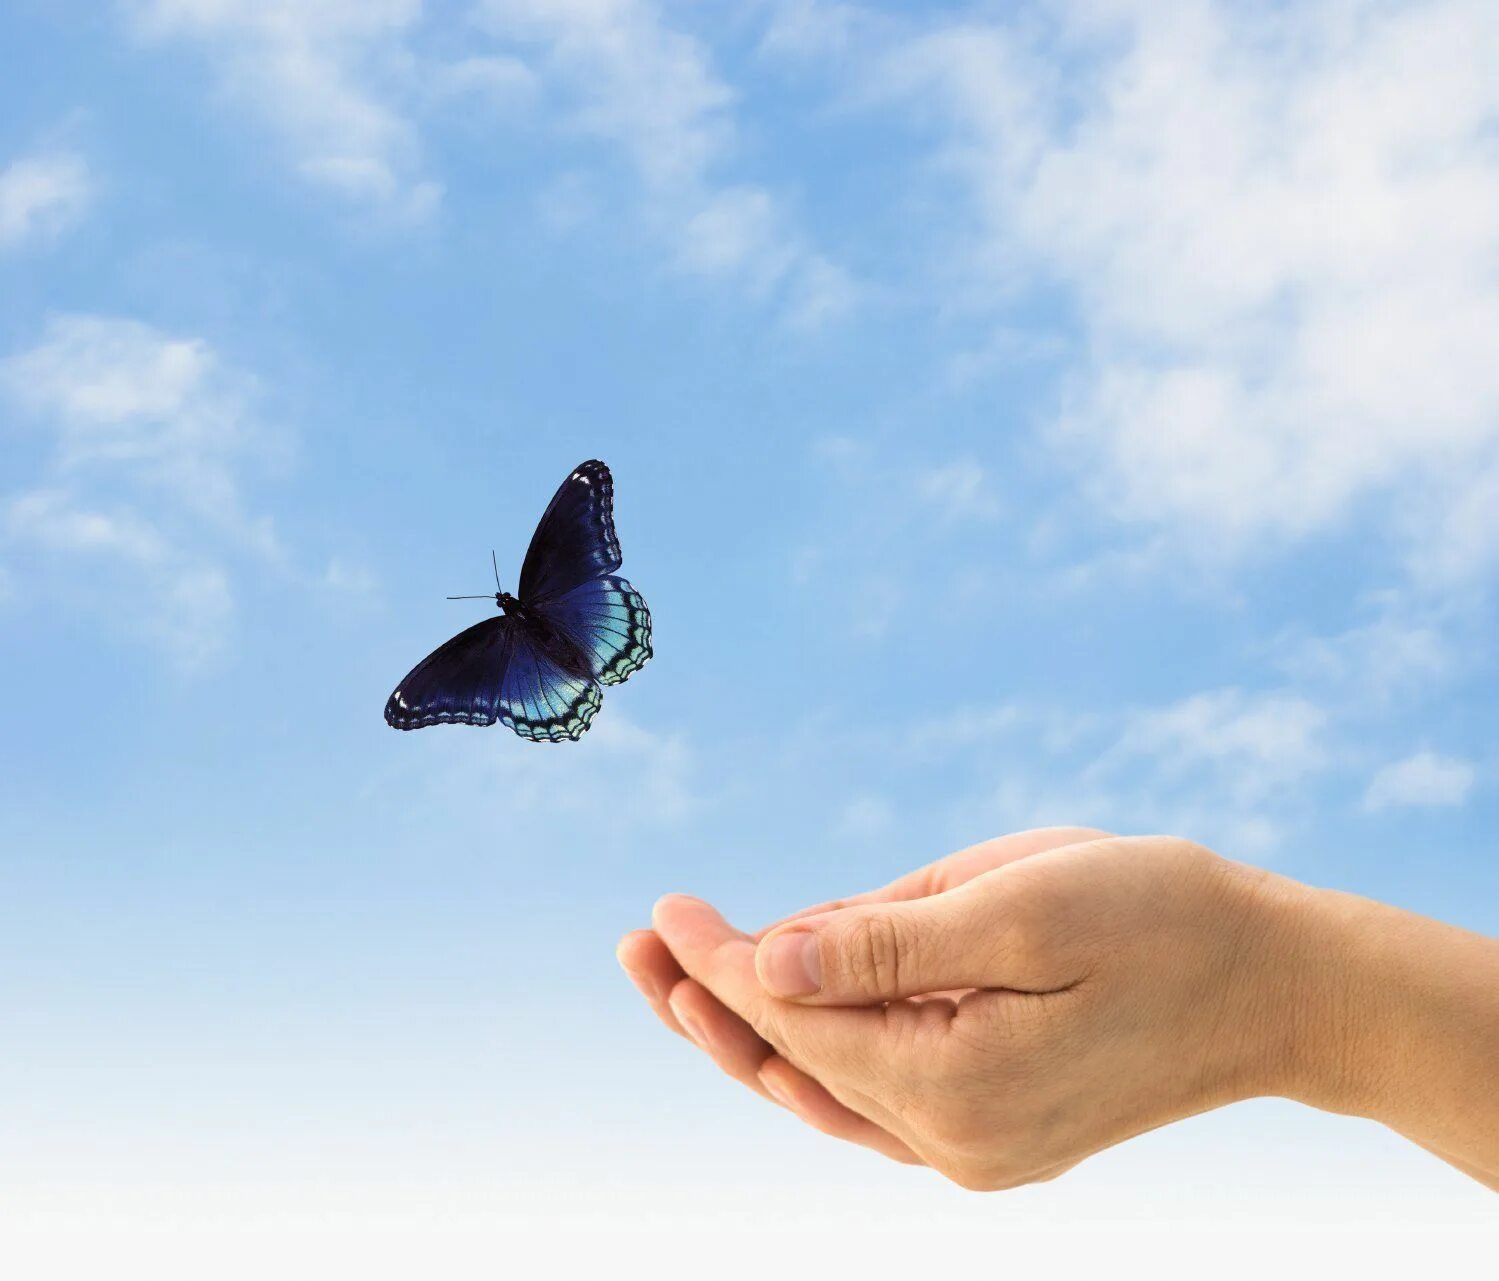 Бабочка на ладони. Бабочка улетает с руки. Счастье бабочки. Свобода картинки. Счастье было в твоих руках